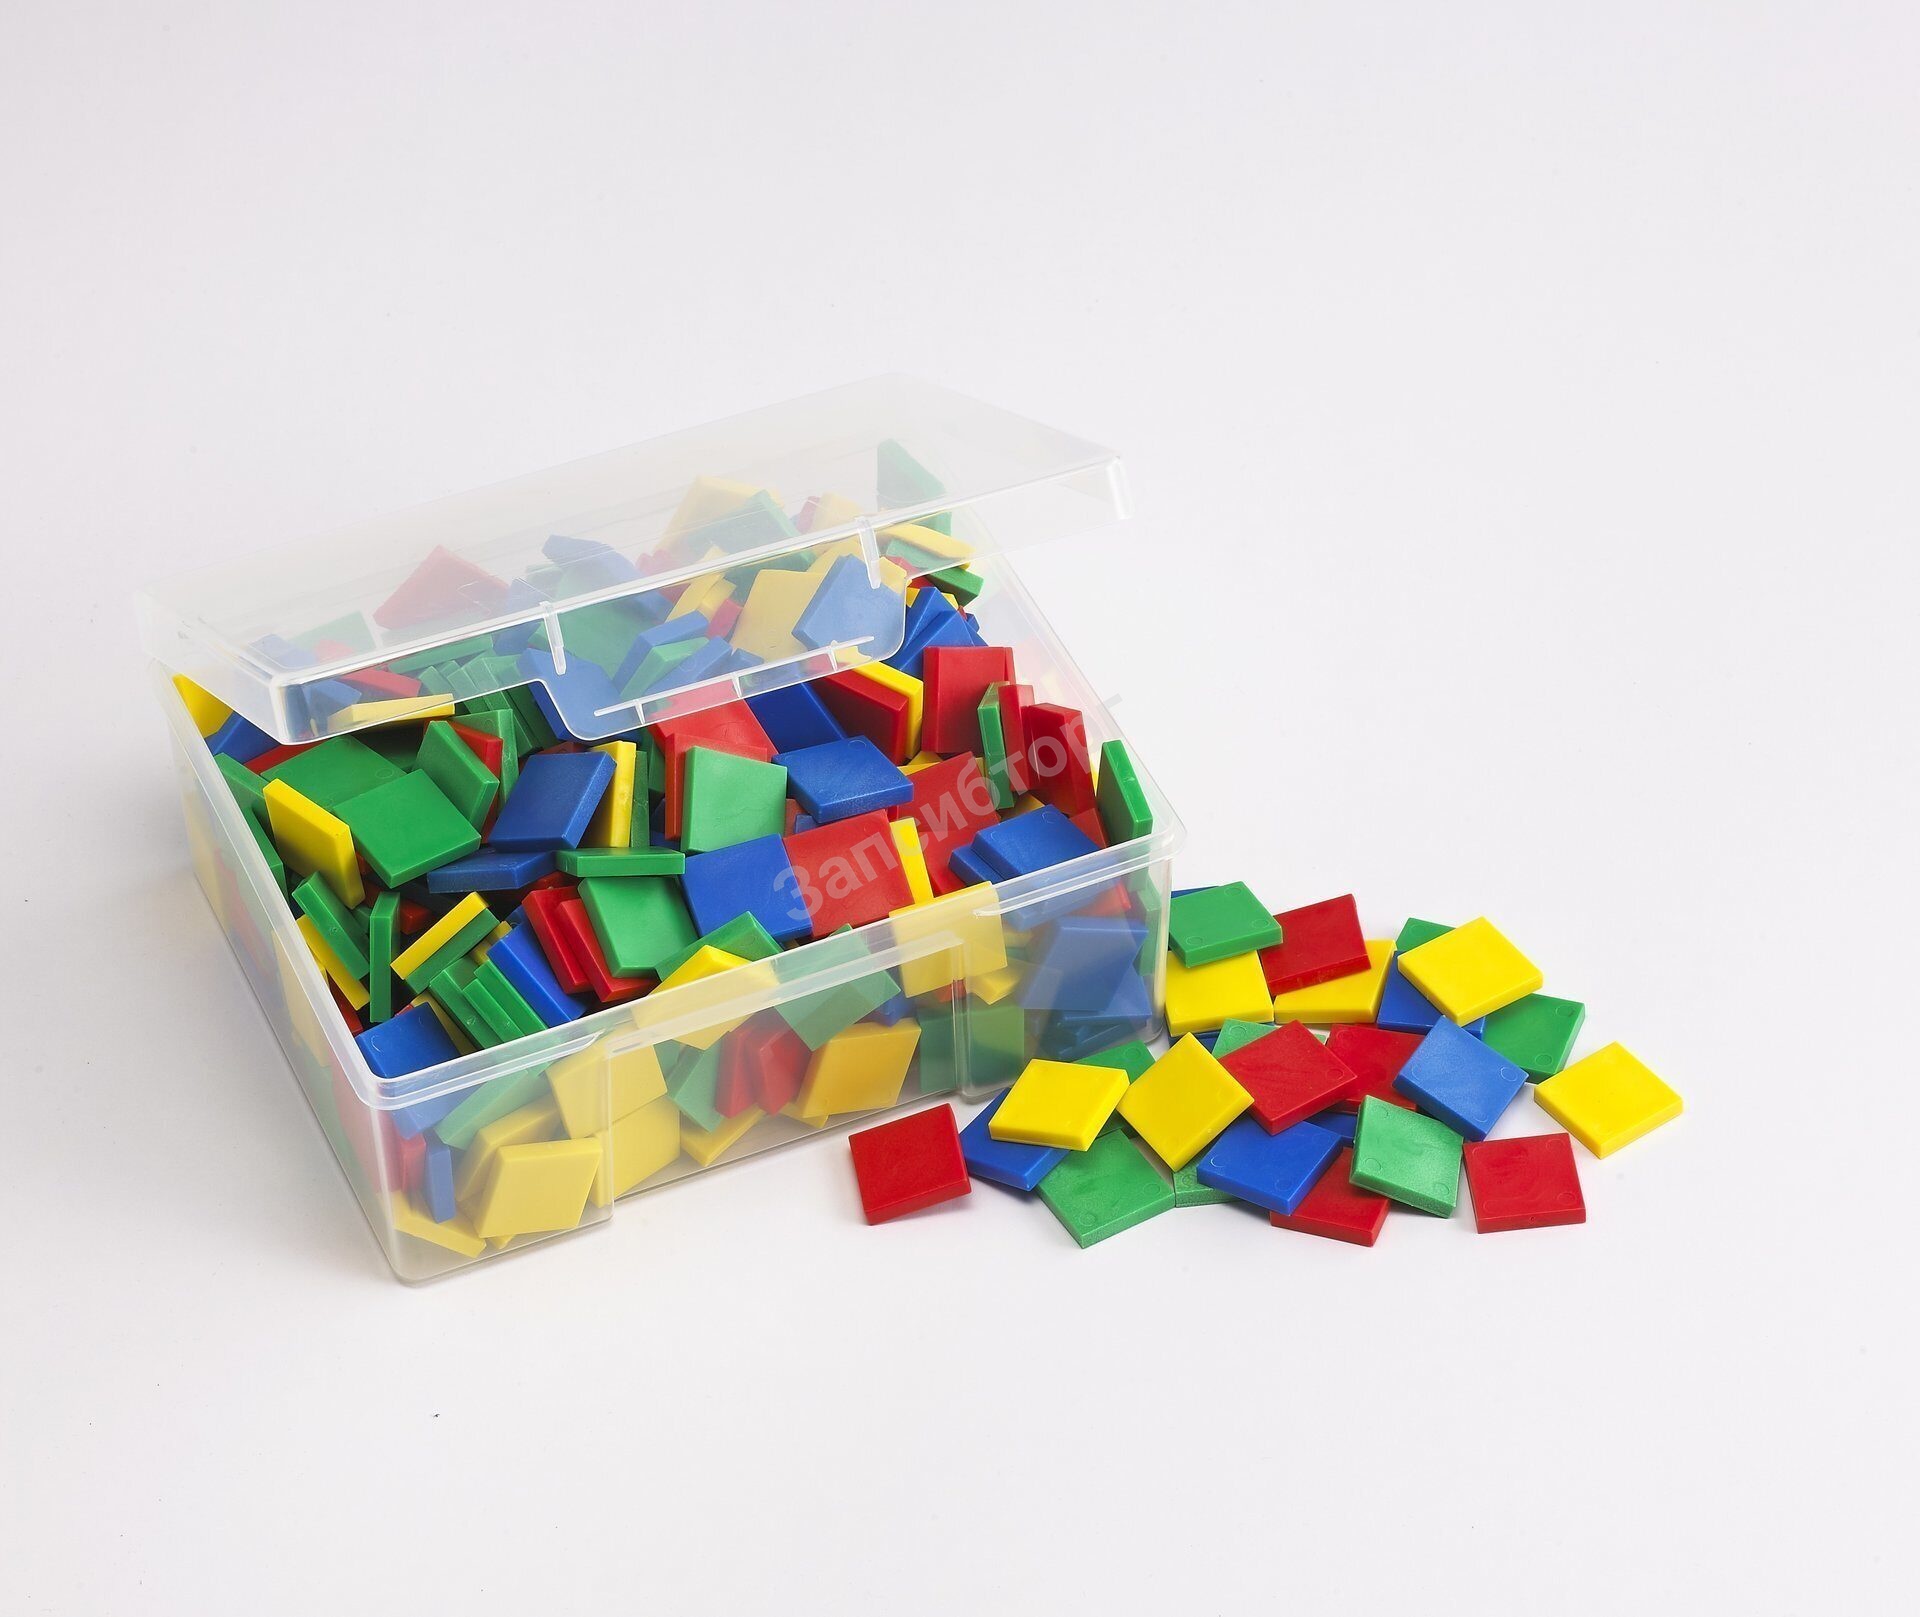 Плитки цветные (пластмасса 25 мм, 5 мм толщина, 4 цвета, 400 шт) в пластмассовом контейнере